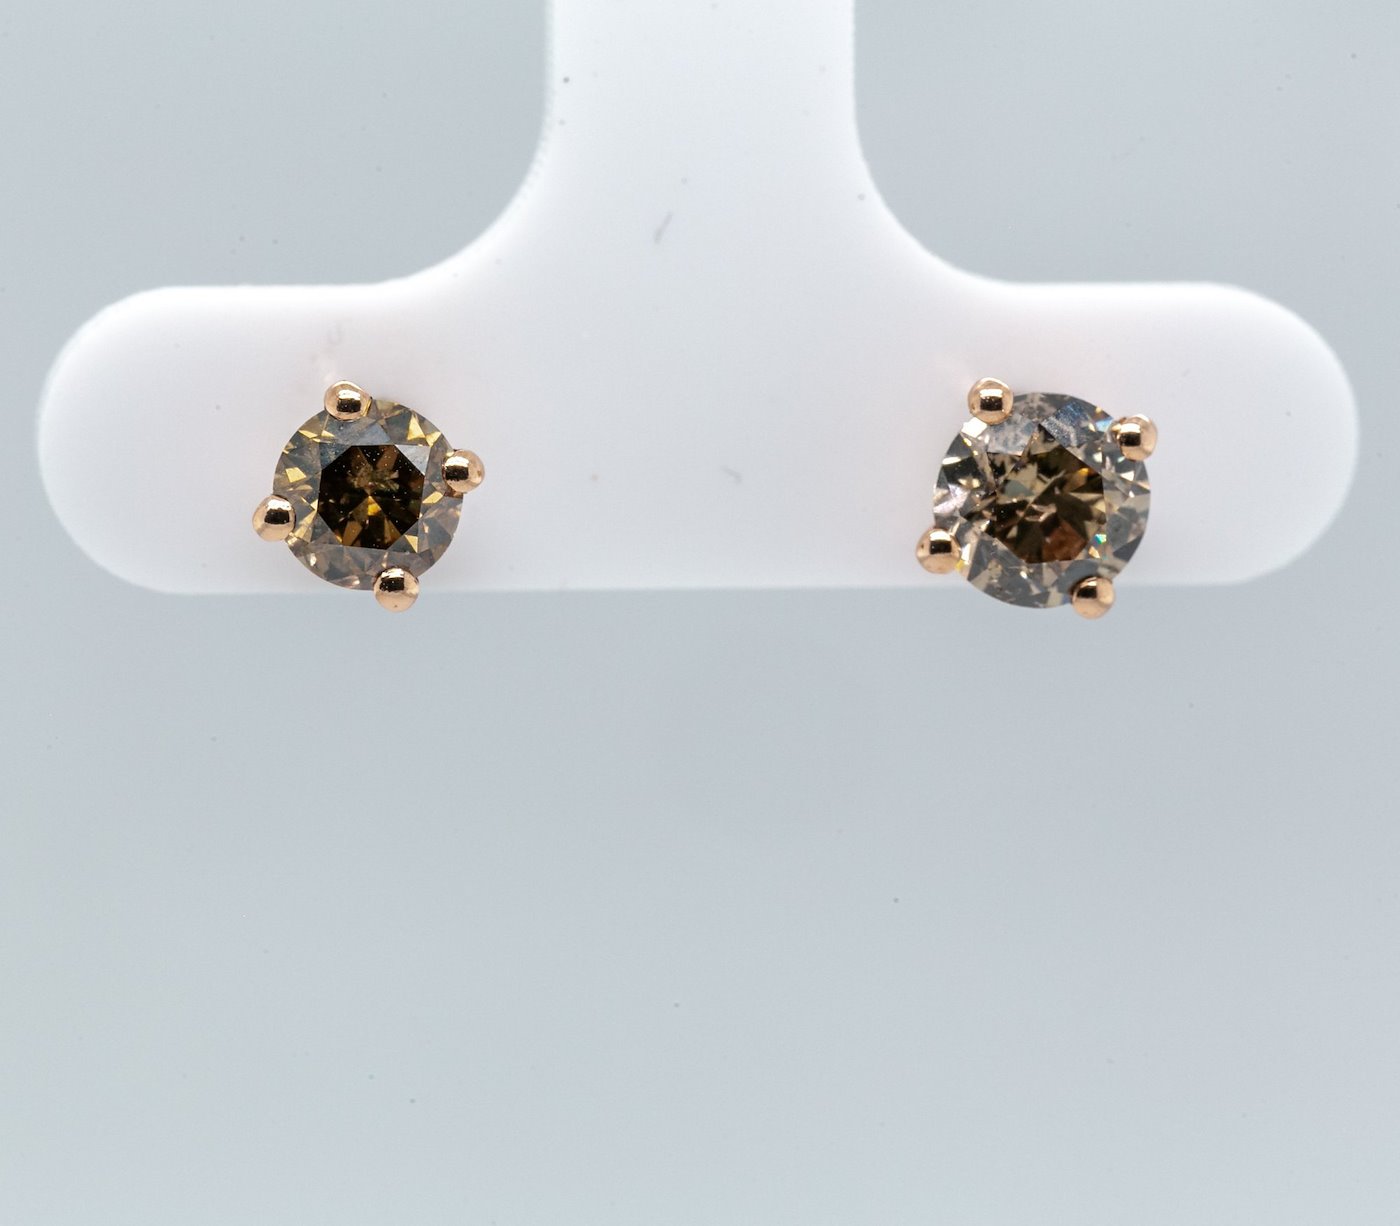 .. - Luxusní náušnice s 1,26 ct fancy color diamanty, růžové zlato 585/1000, značeno platnou puncovní značkou "labuť", hrubá hmotnost 1,26 g